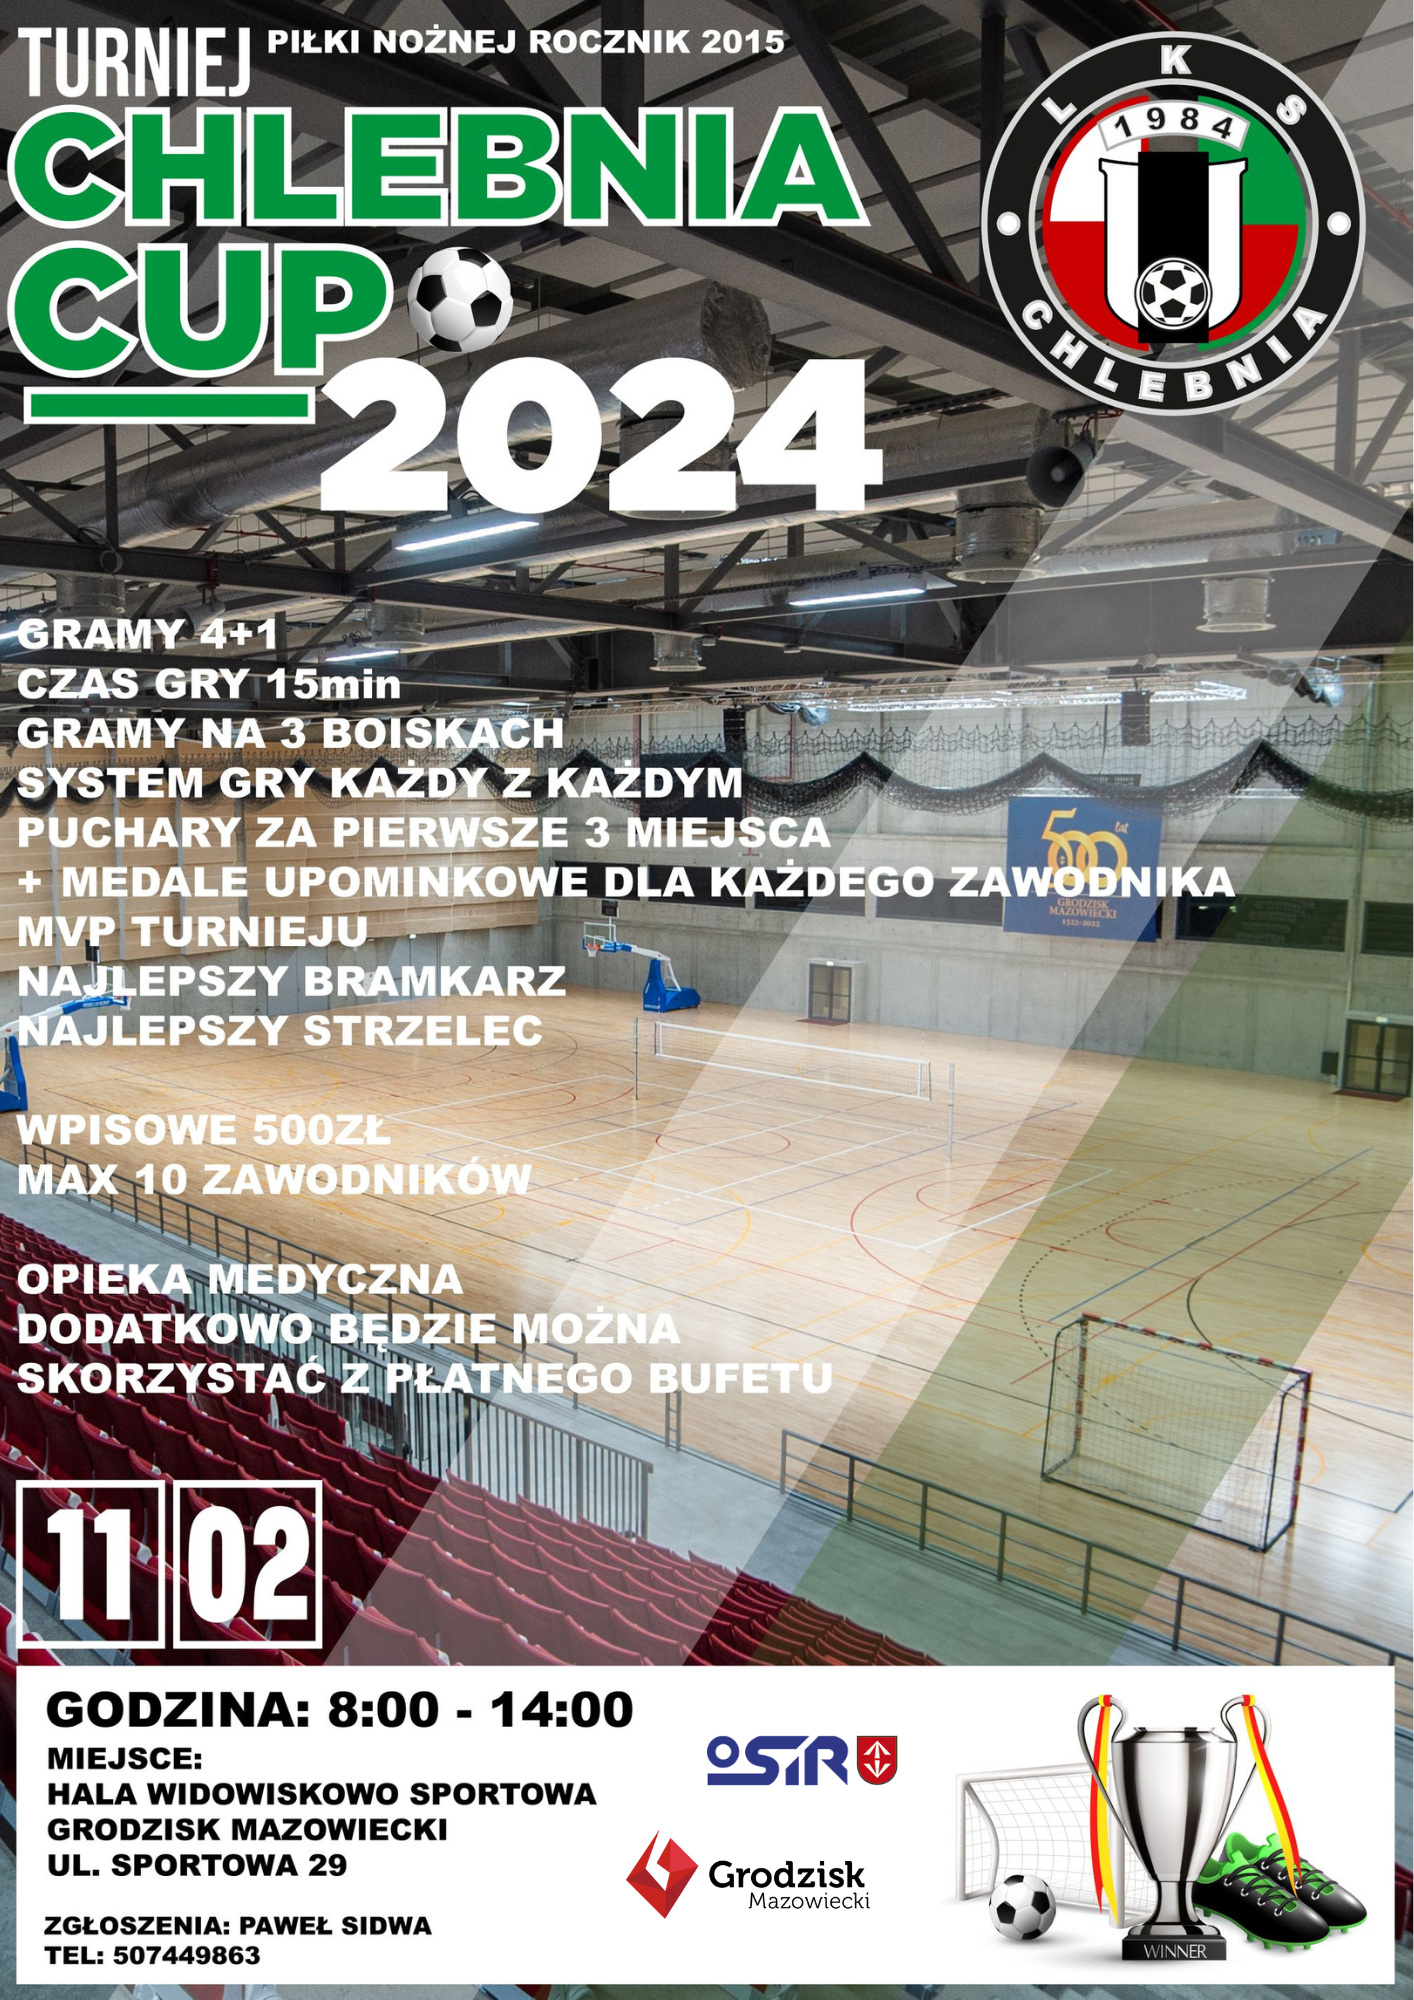 TURNIEJ CHLEBNIA CUP 2024 - godz. 8:00, Hala Widowiskowo-Sportowa CAiIS